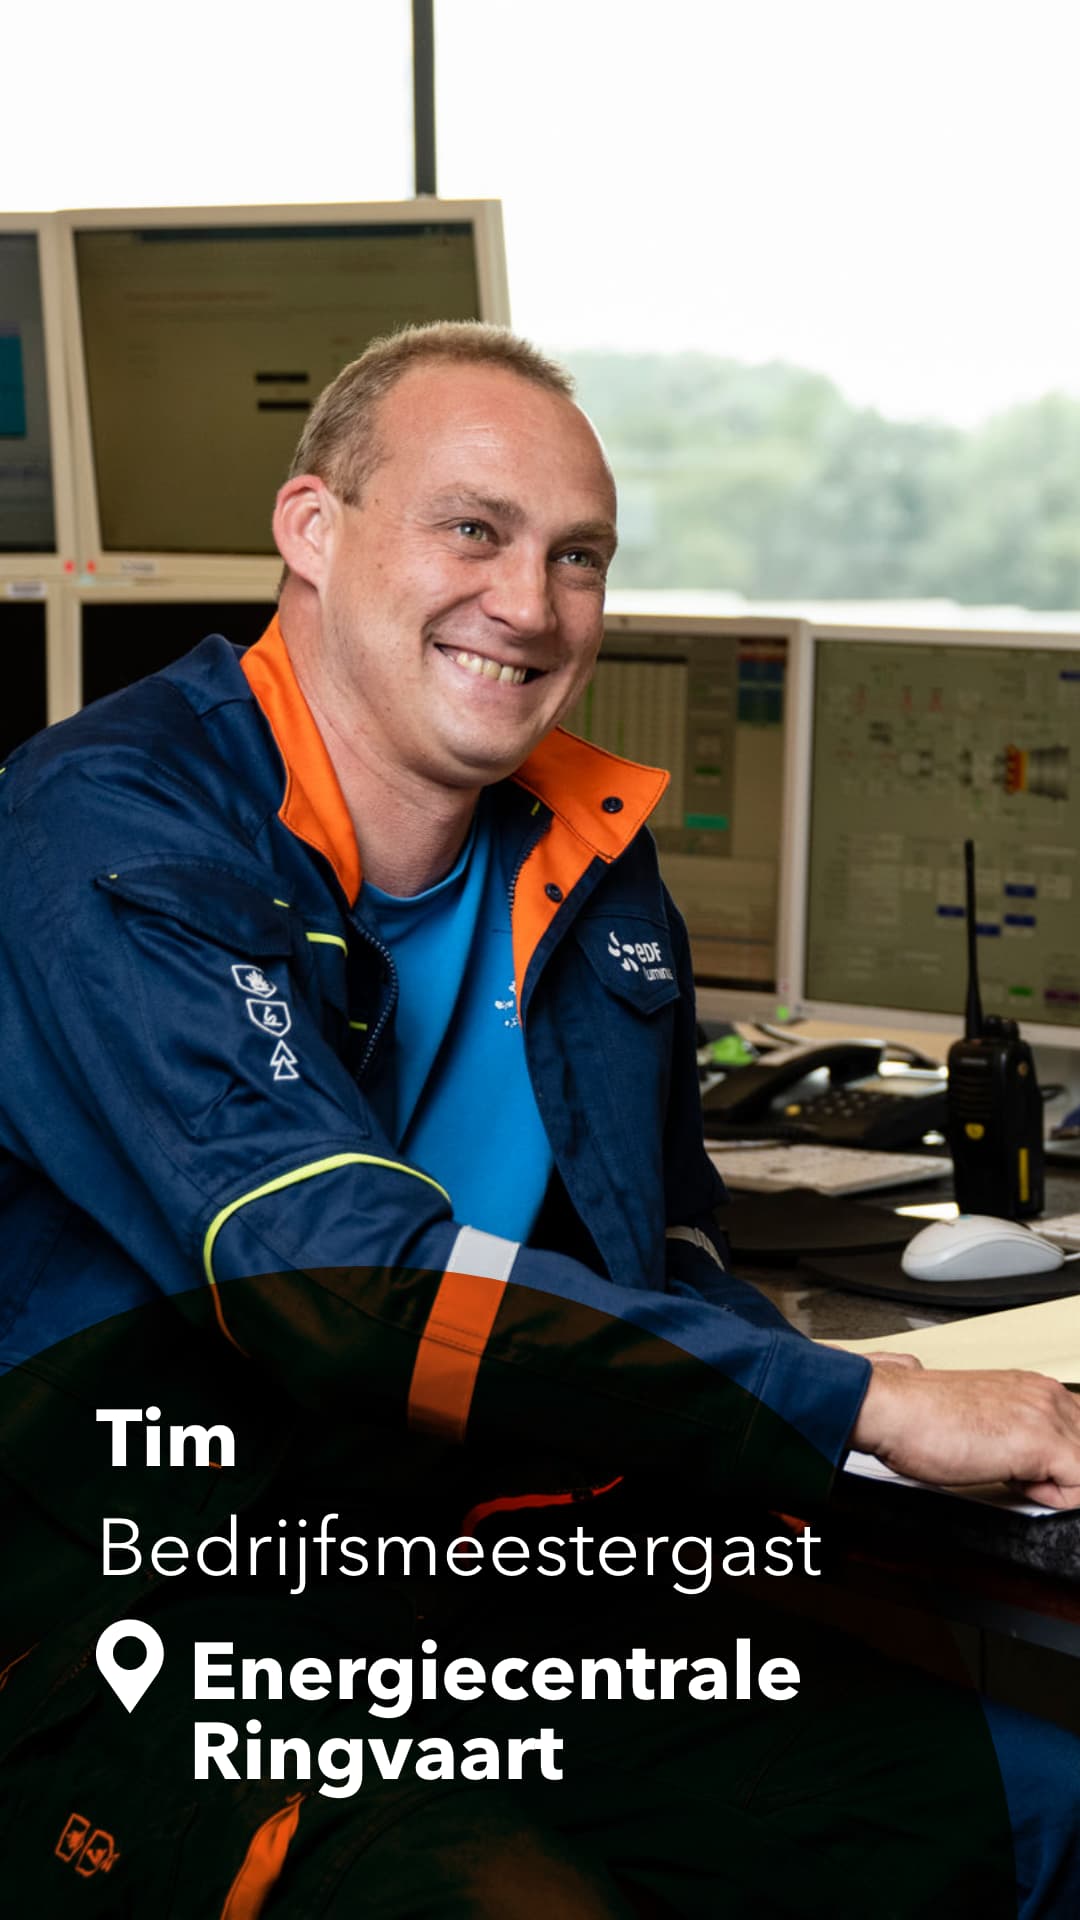 Tim - Bedrijfsmeestergast - Energiecentrale Ringvaart